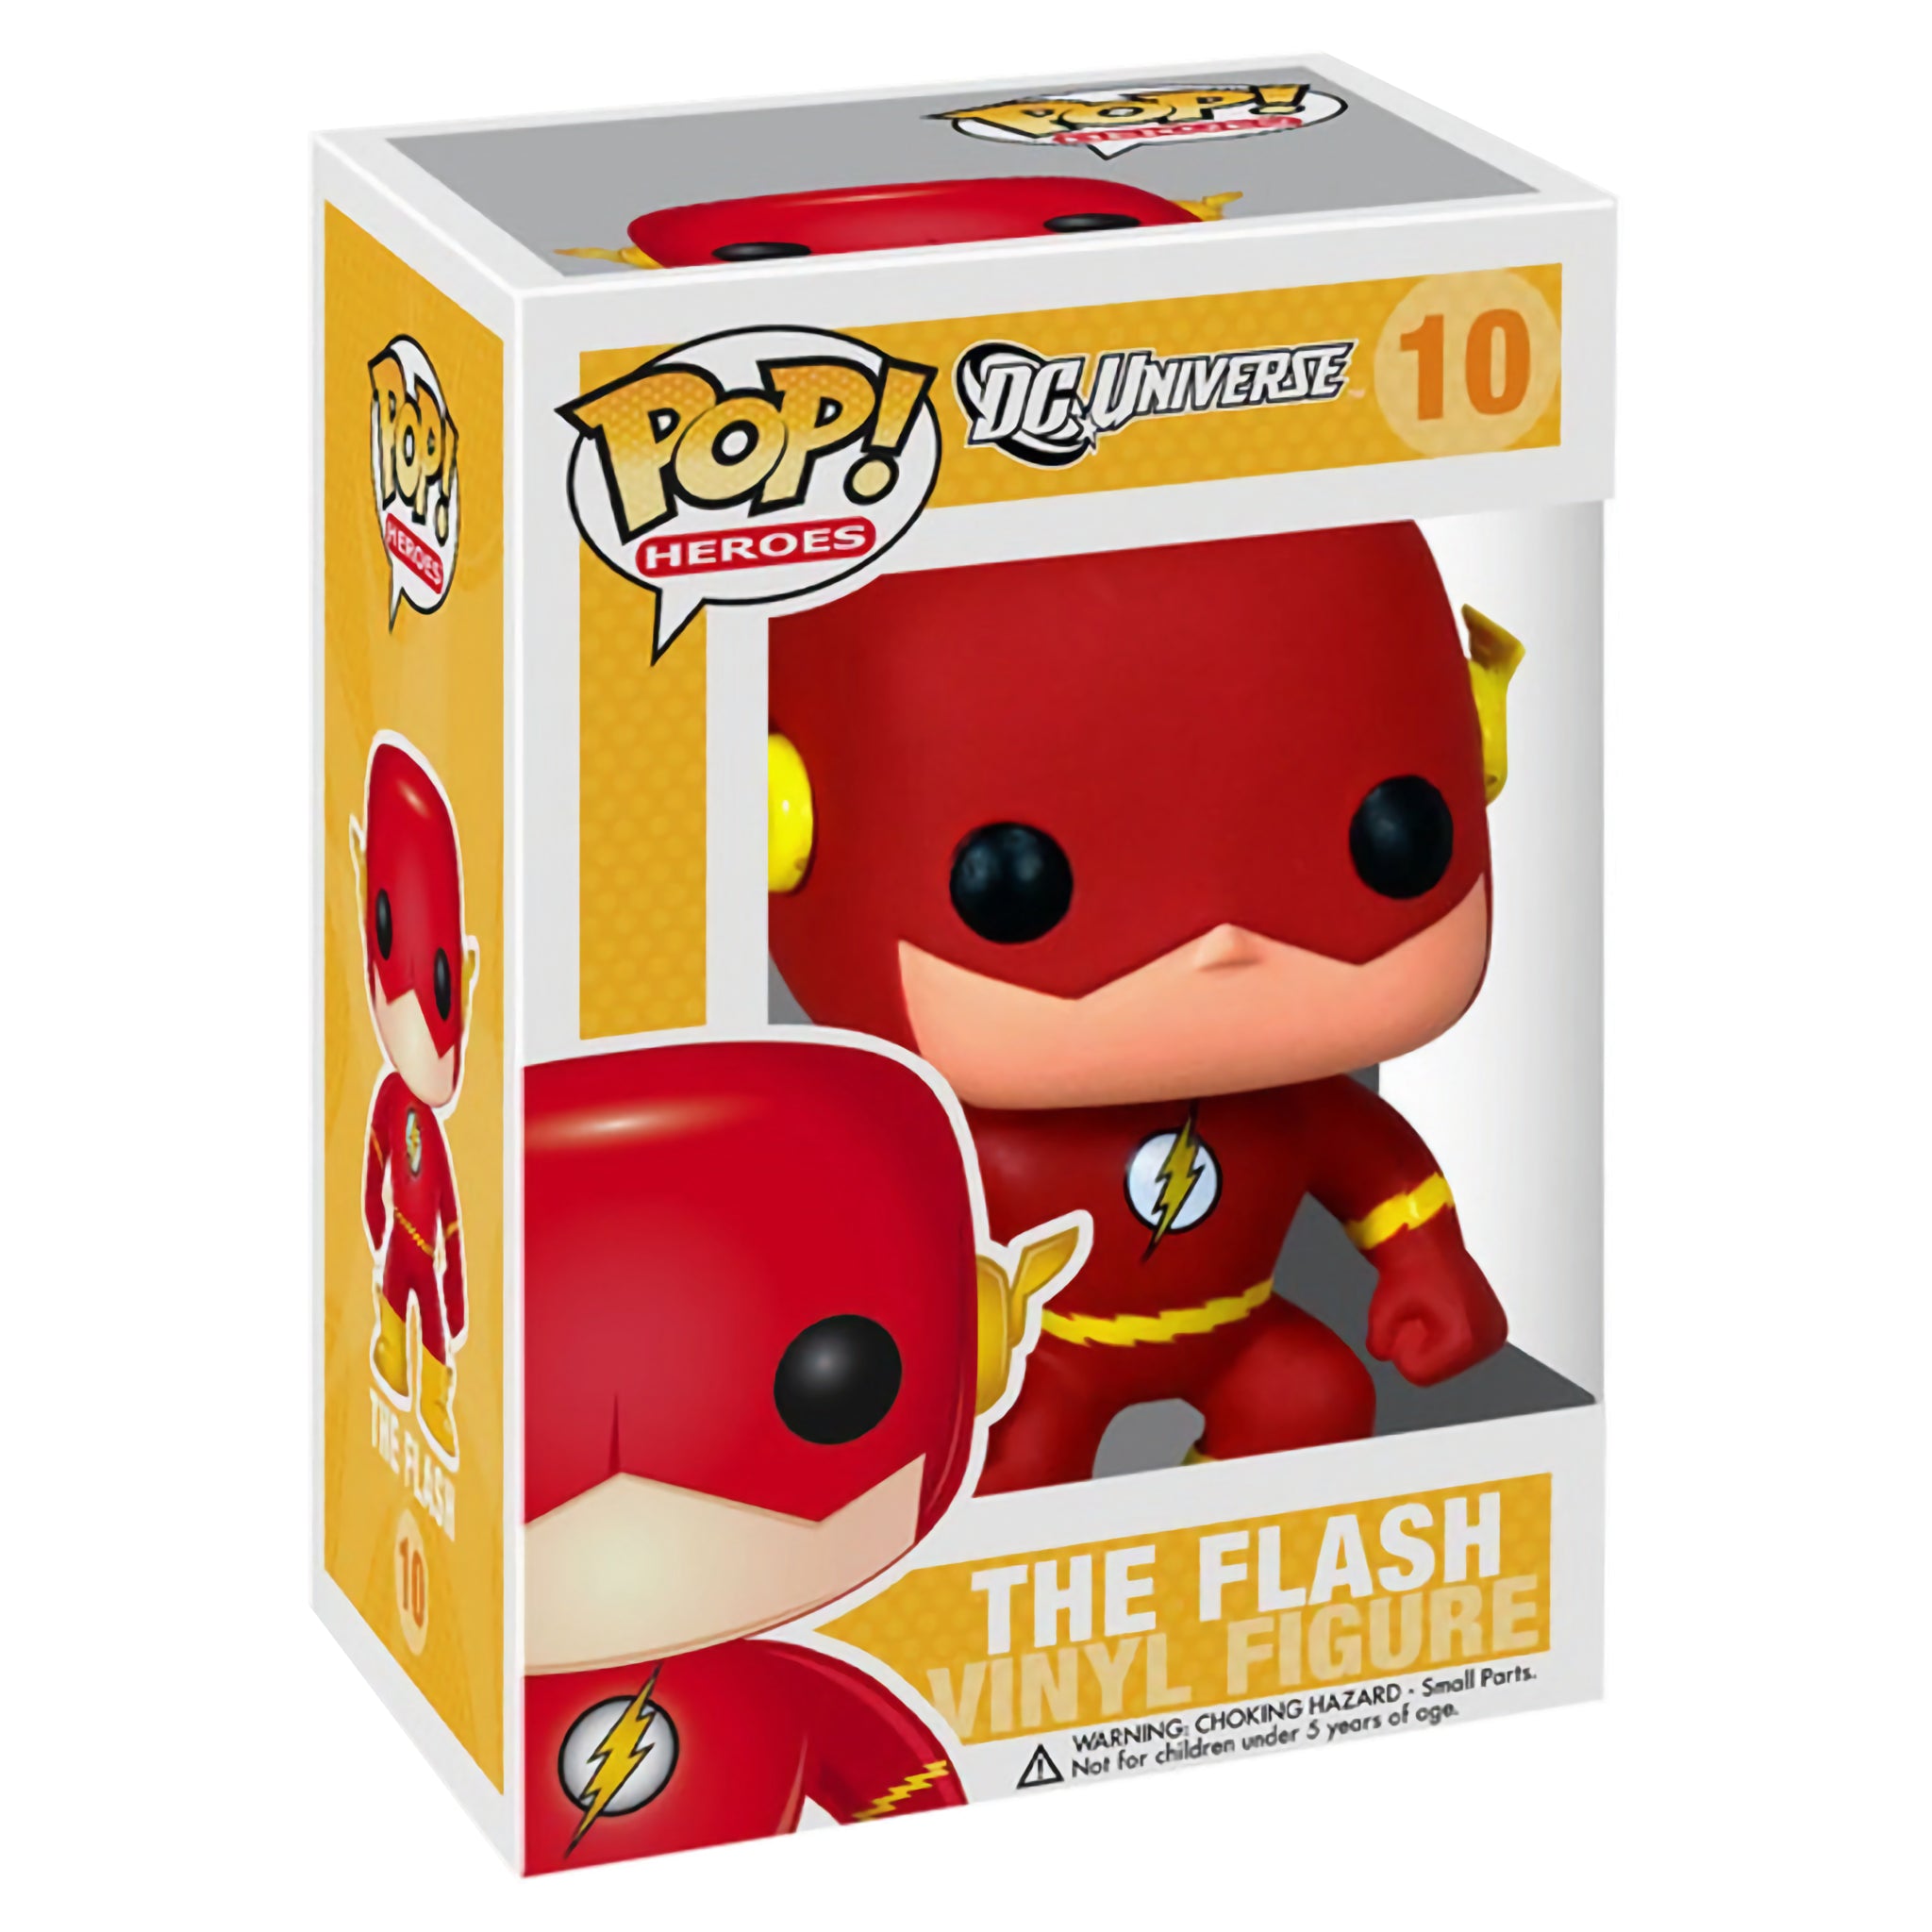 The Flash (DC Universe) Funko Pop!